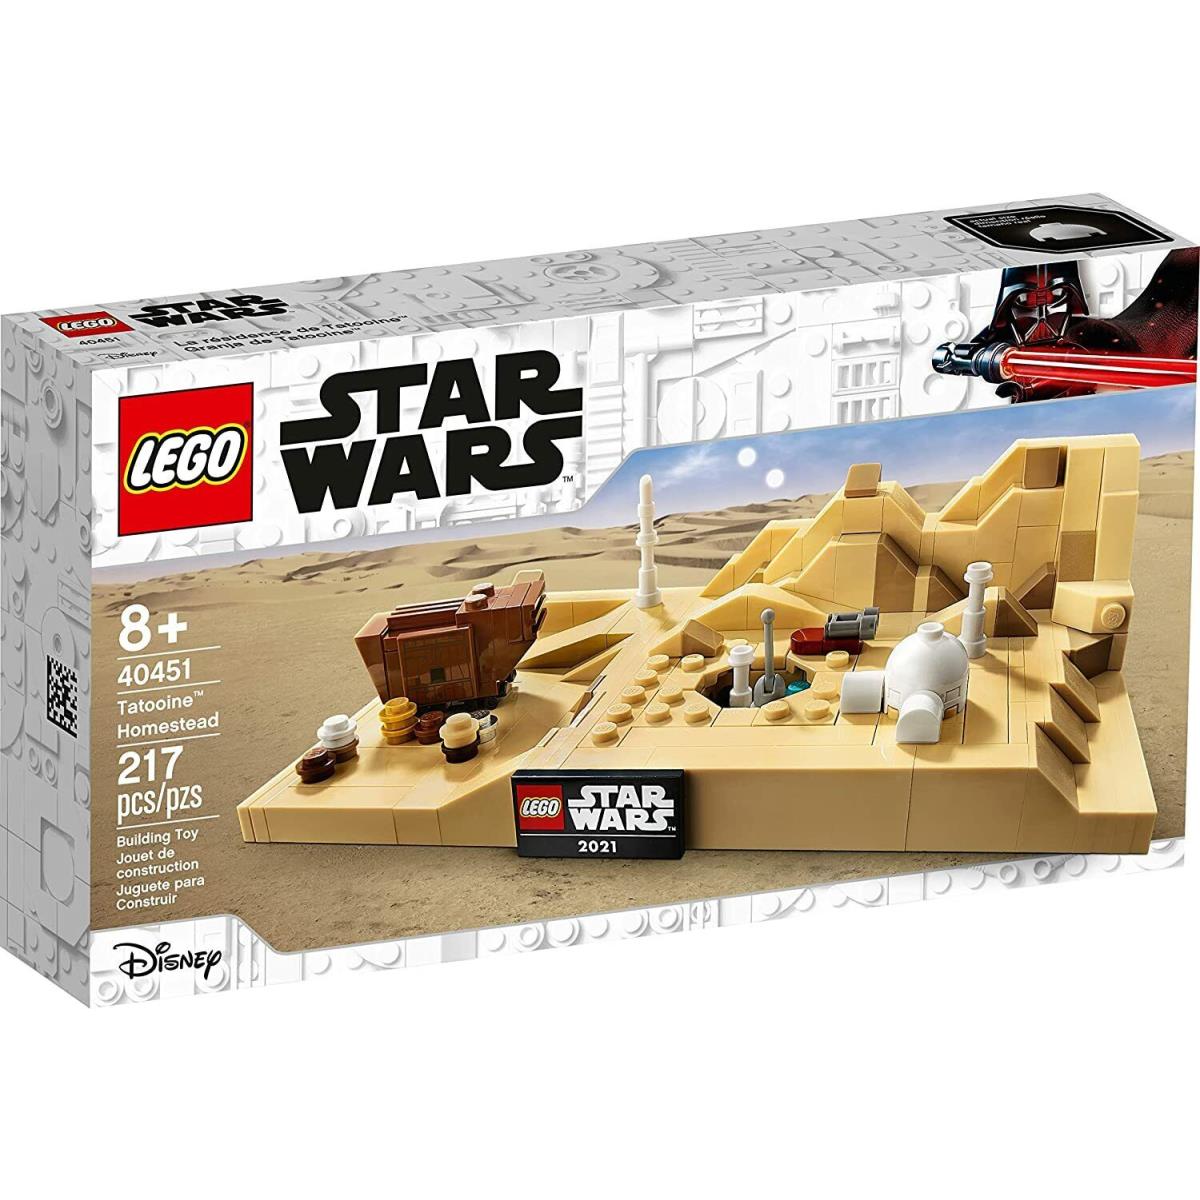 Lego 40451 Tatooine Homestead Micro Microbuild Star Wars Exclusive Set